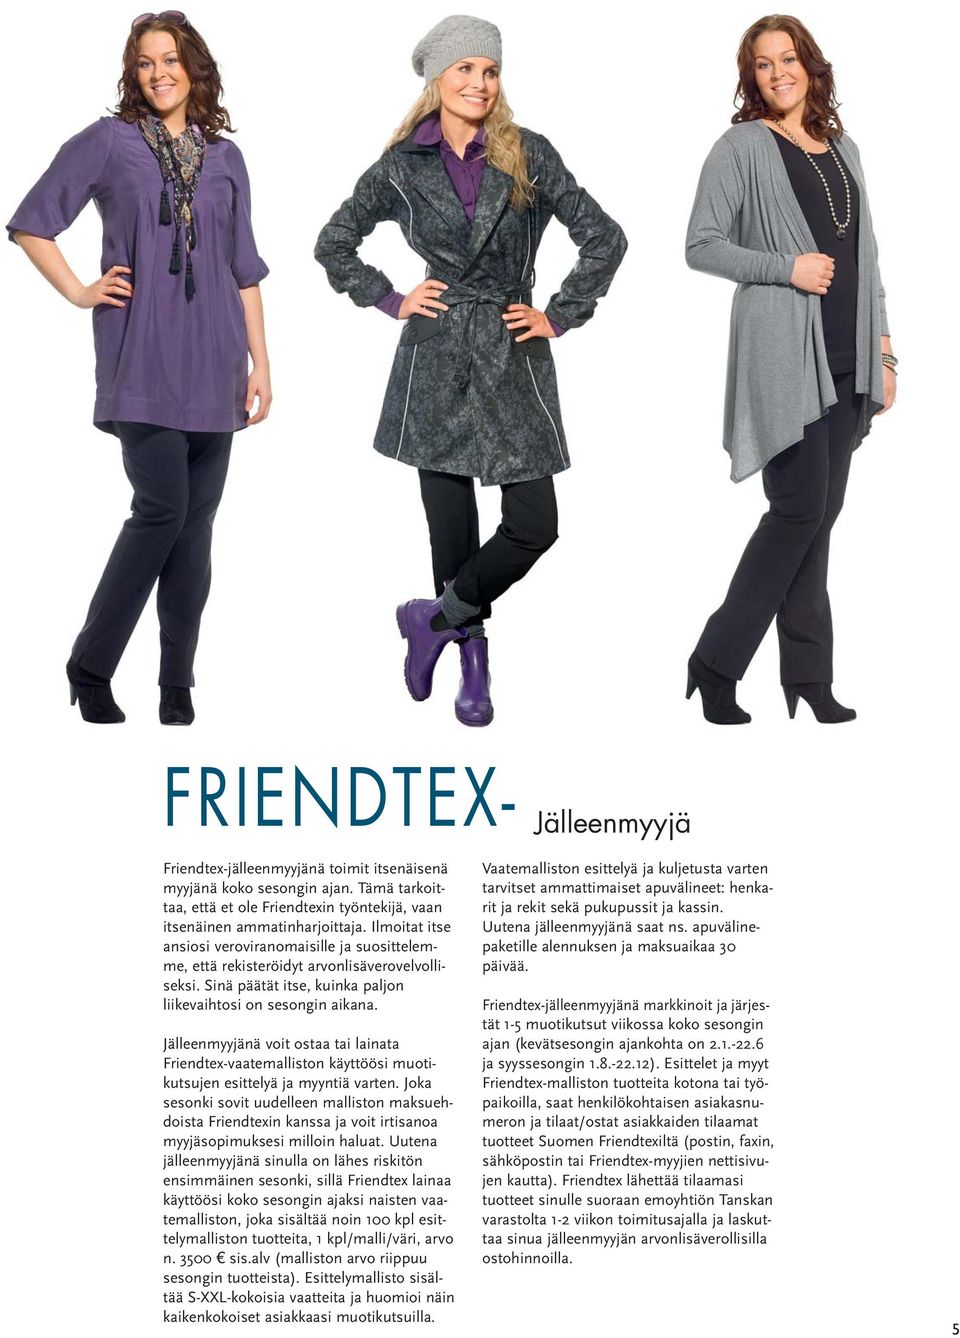 Jälleenmyyjänä voit ostaa tai lainata Friendtex-vaatemalliston käyttöösi muotikutsujen esittelyä ja myyntiä varten.